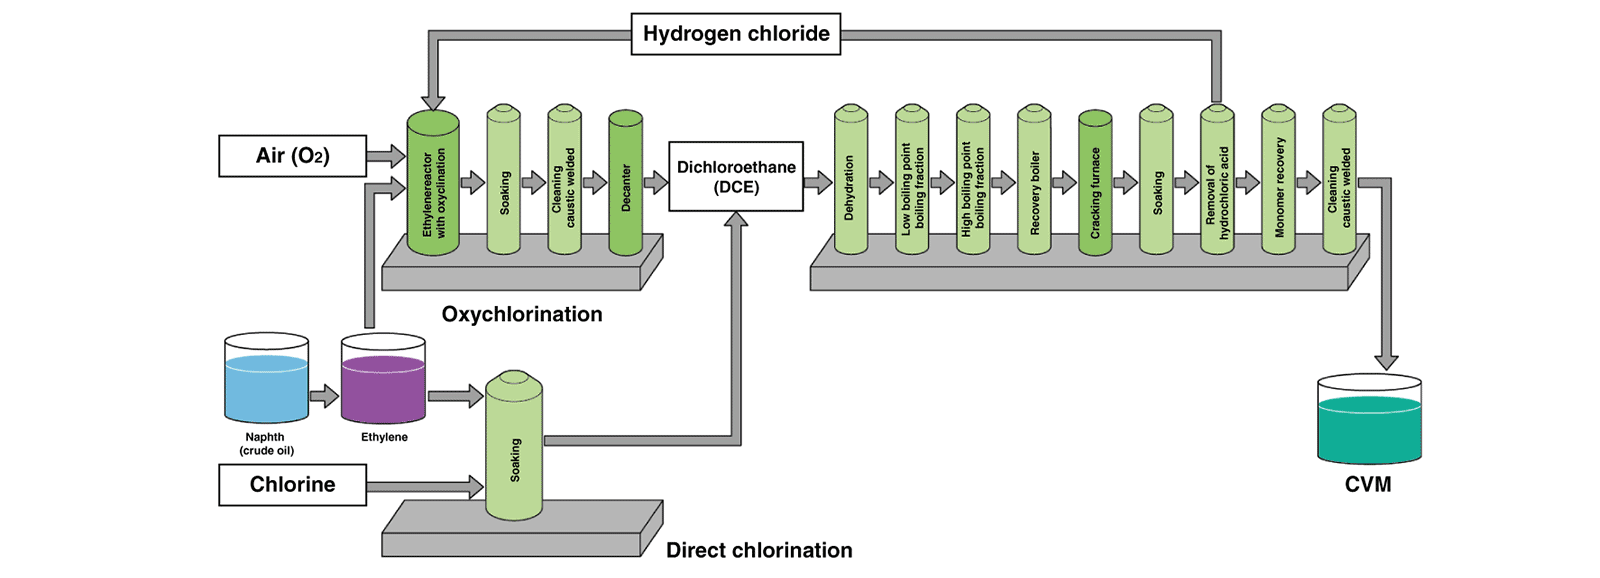 Produzione di cloruro di vinile monomero cvm